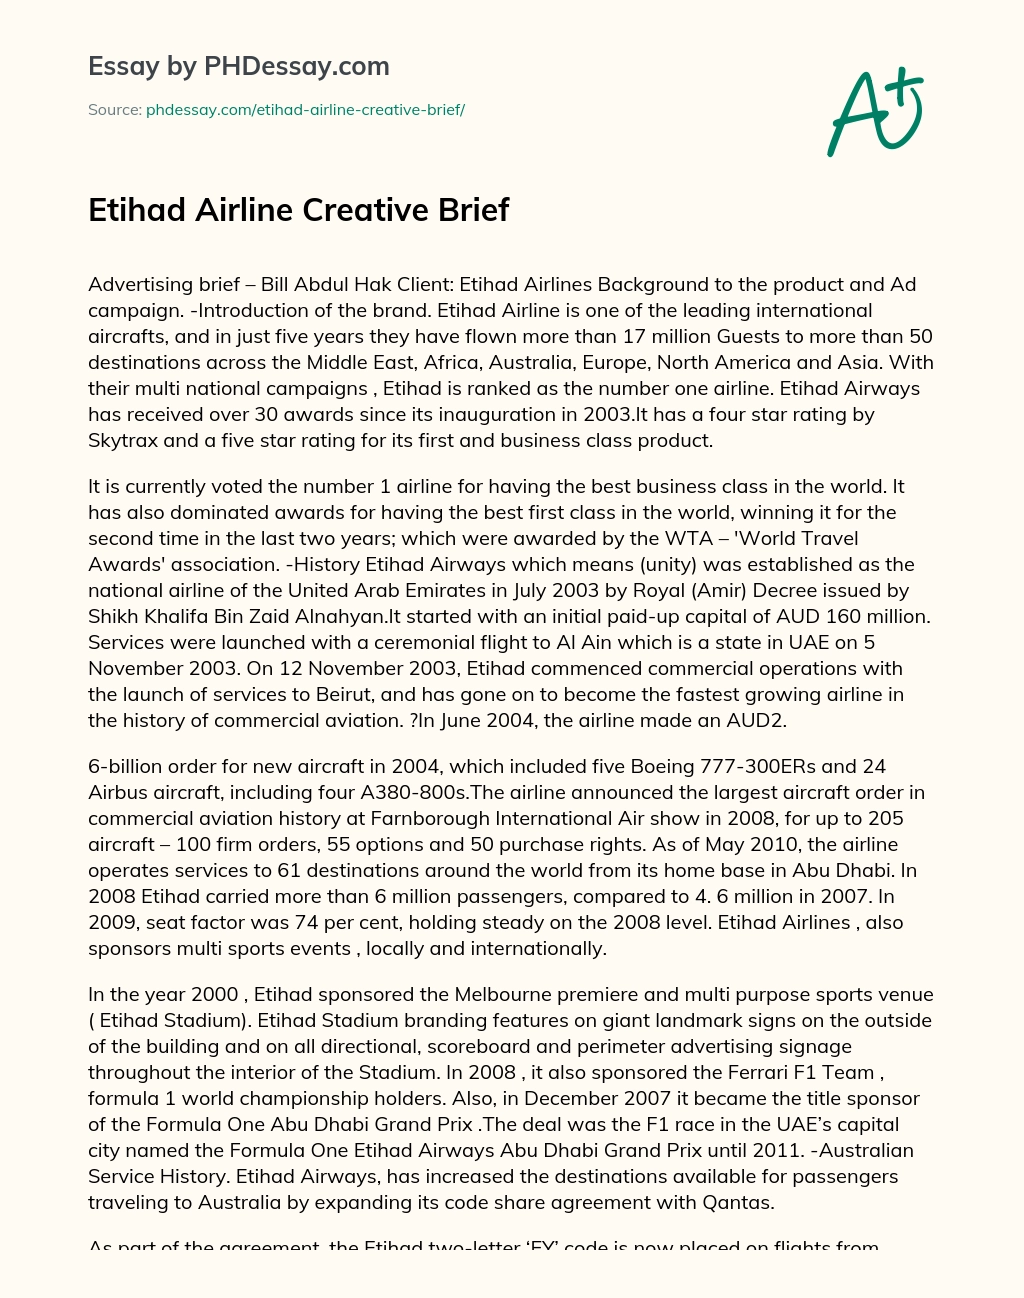 Etihad Airline Creative Brief essay